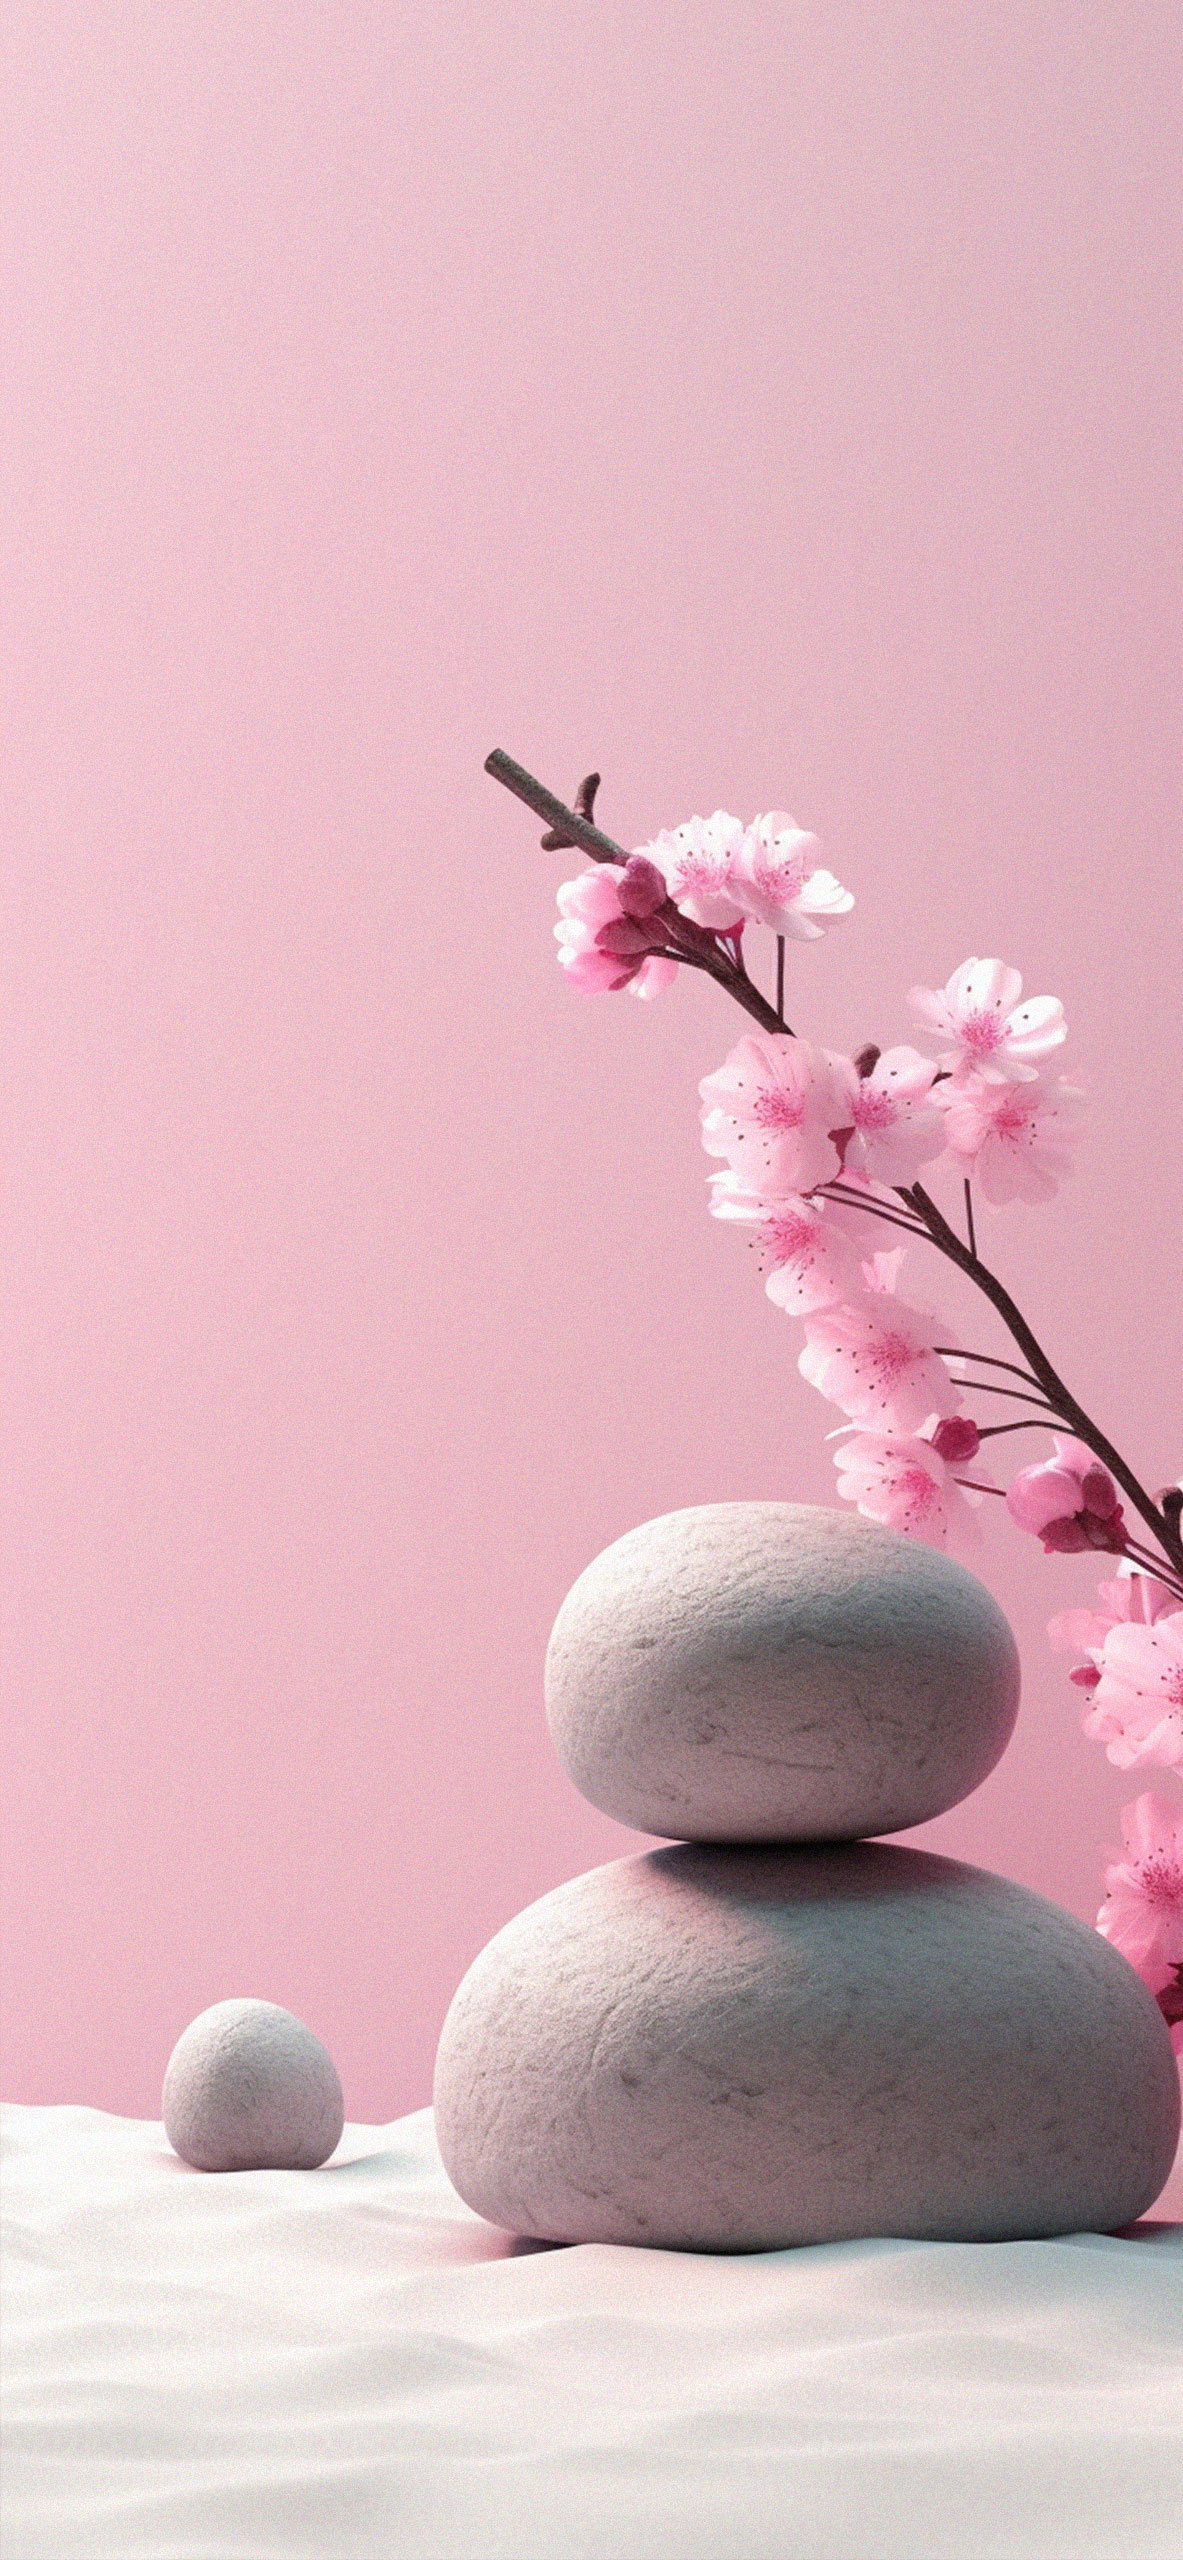 Zen garden minimalist wallpaper Zen garden iPhone wallpaper